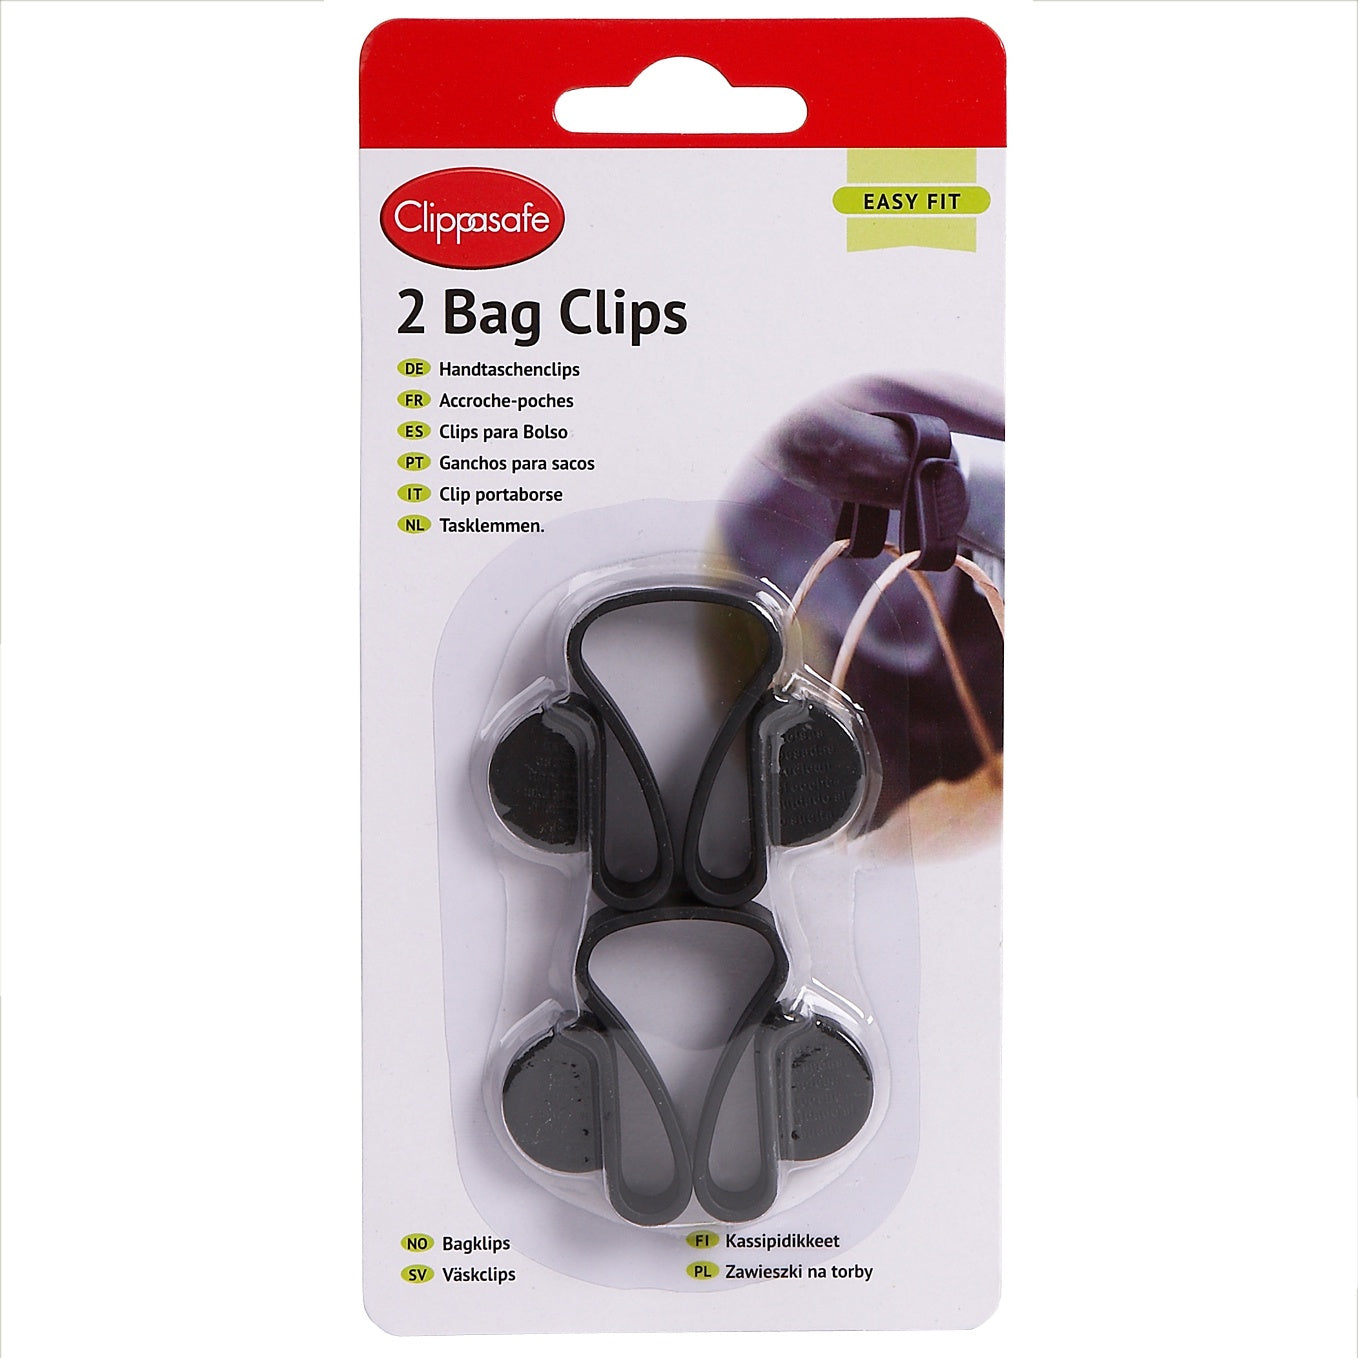 Clippasafe Stroller Bag Clips 2 Pack